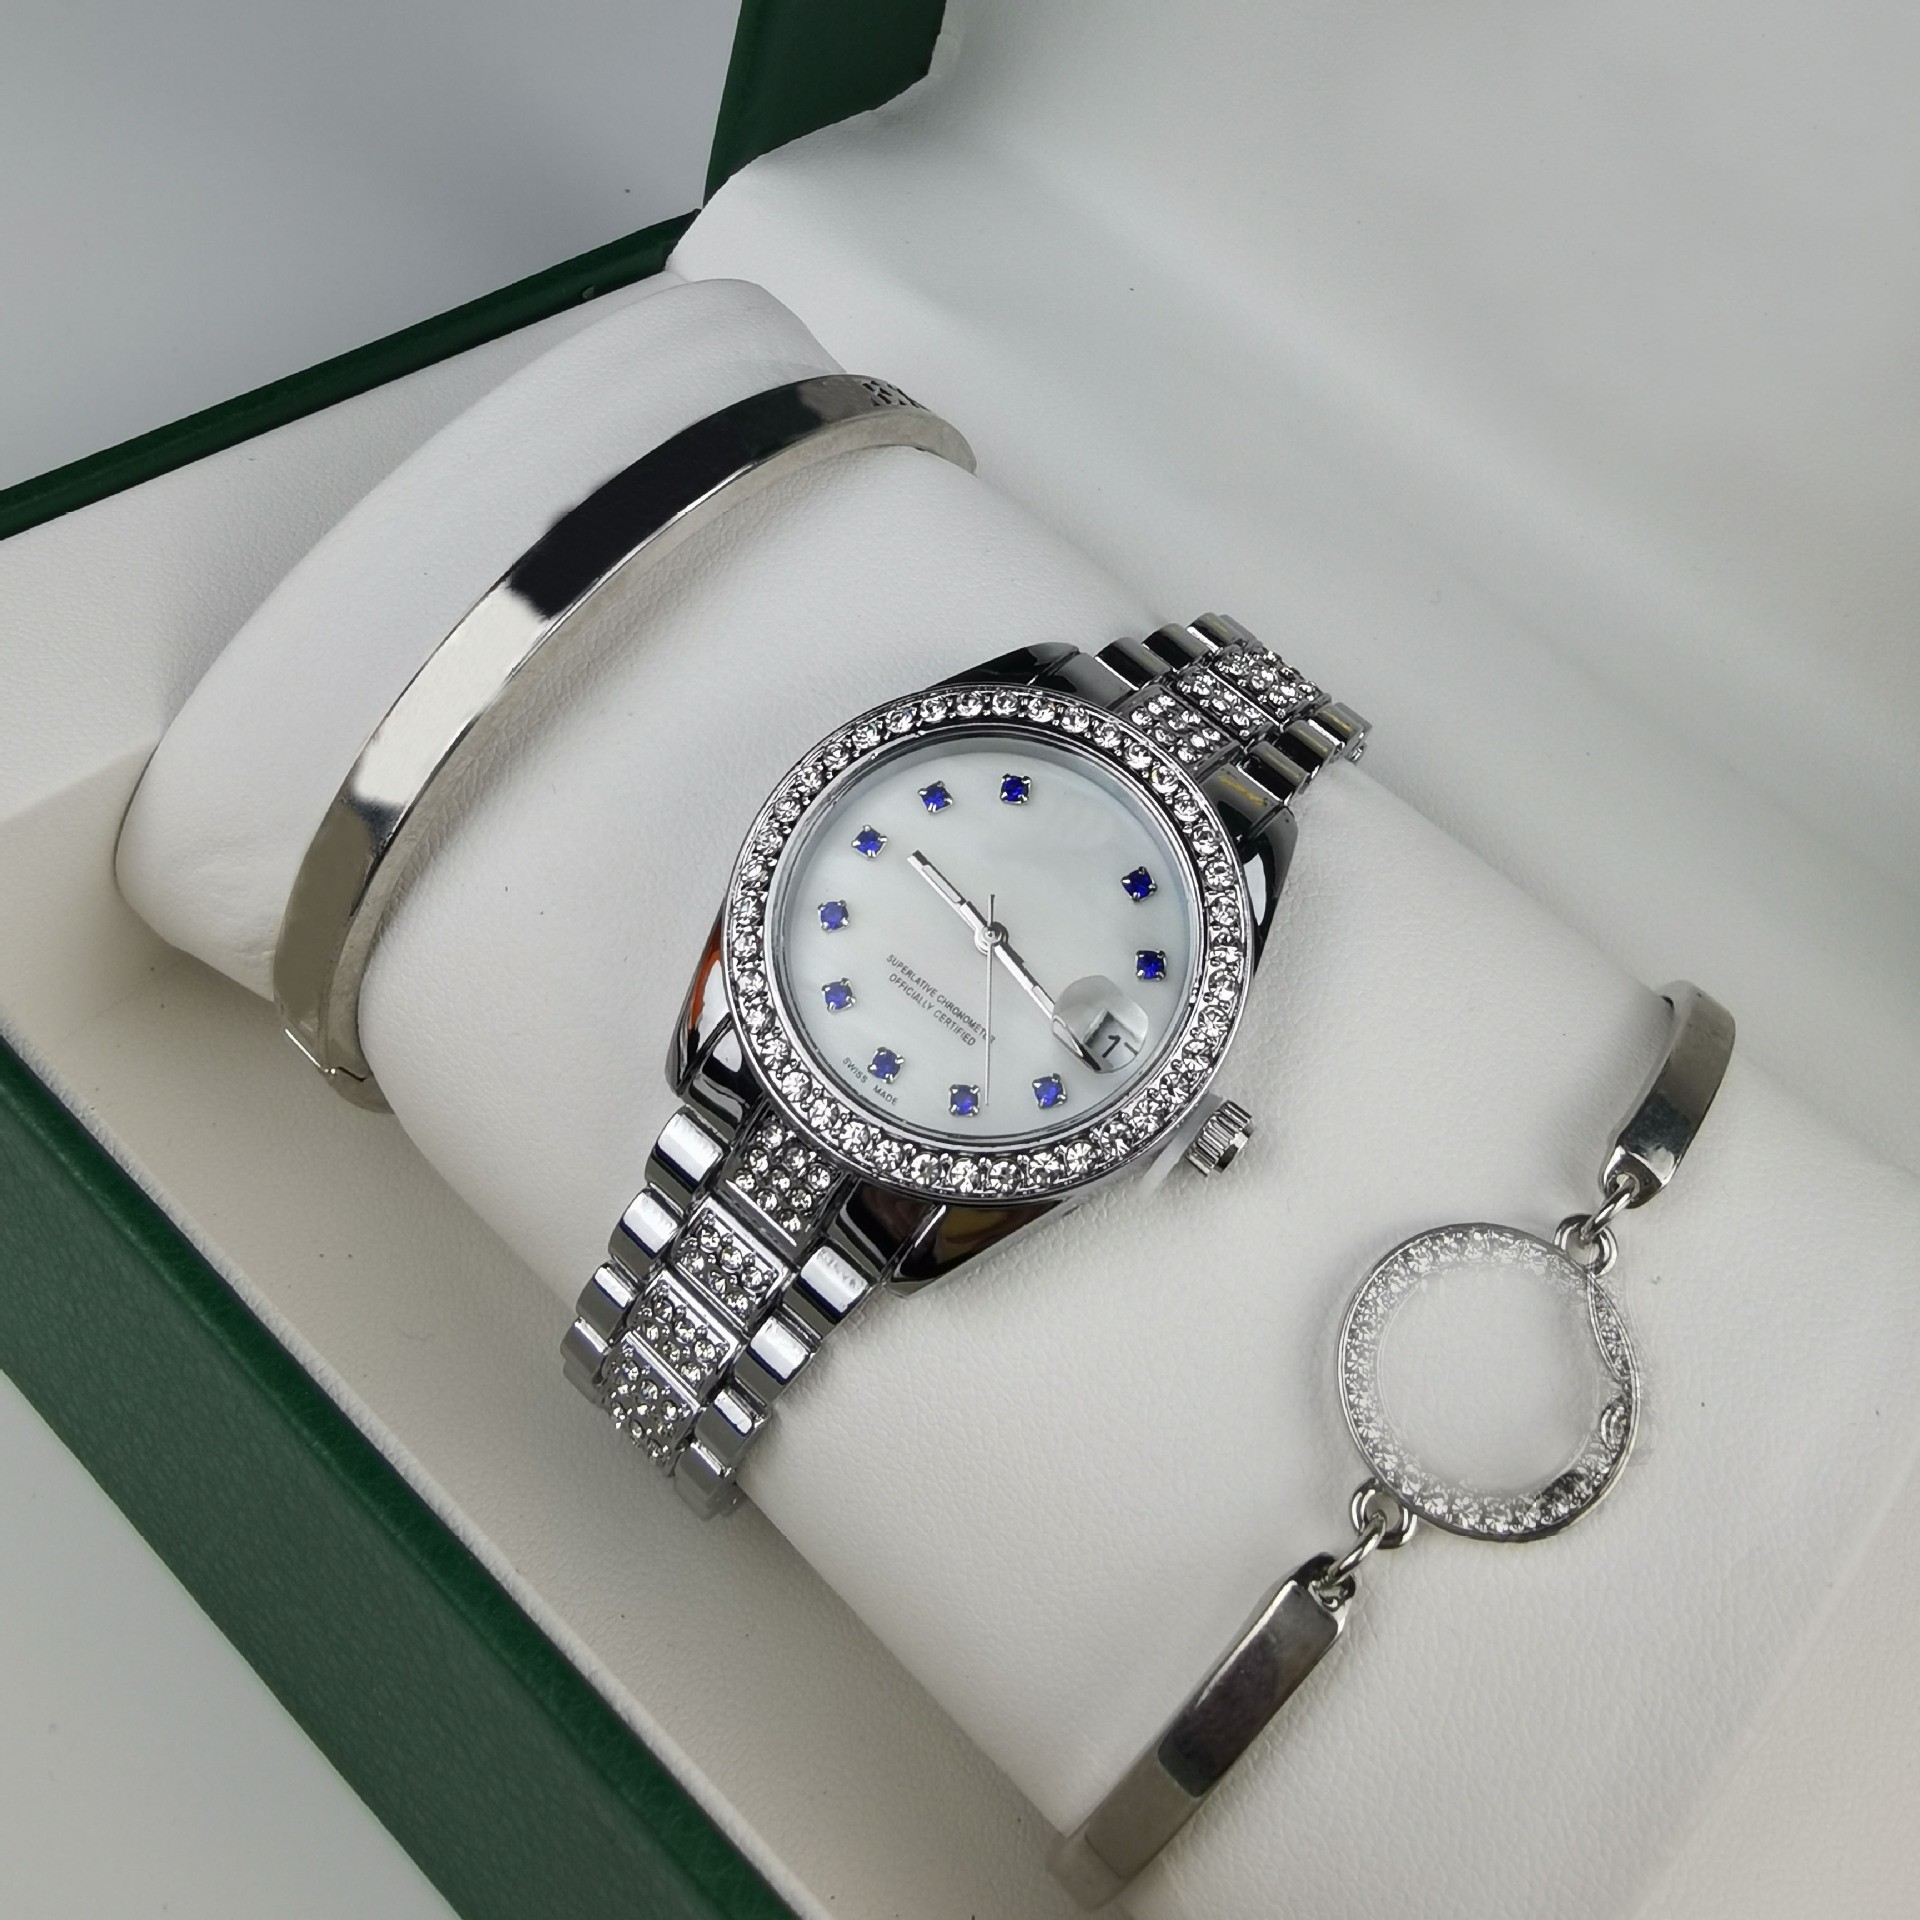 2023 Neues Luxus-Herren-Quarzuhr-Armband, 3-teiliges Set mit vollem Himmelsstern- und Diamant-Design, wasserdichte automatische Datumsuhr, Damen-Sportzeituhr aus Edelstahl